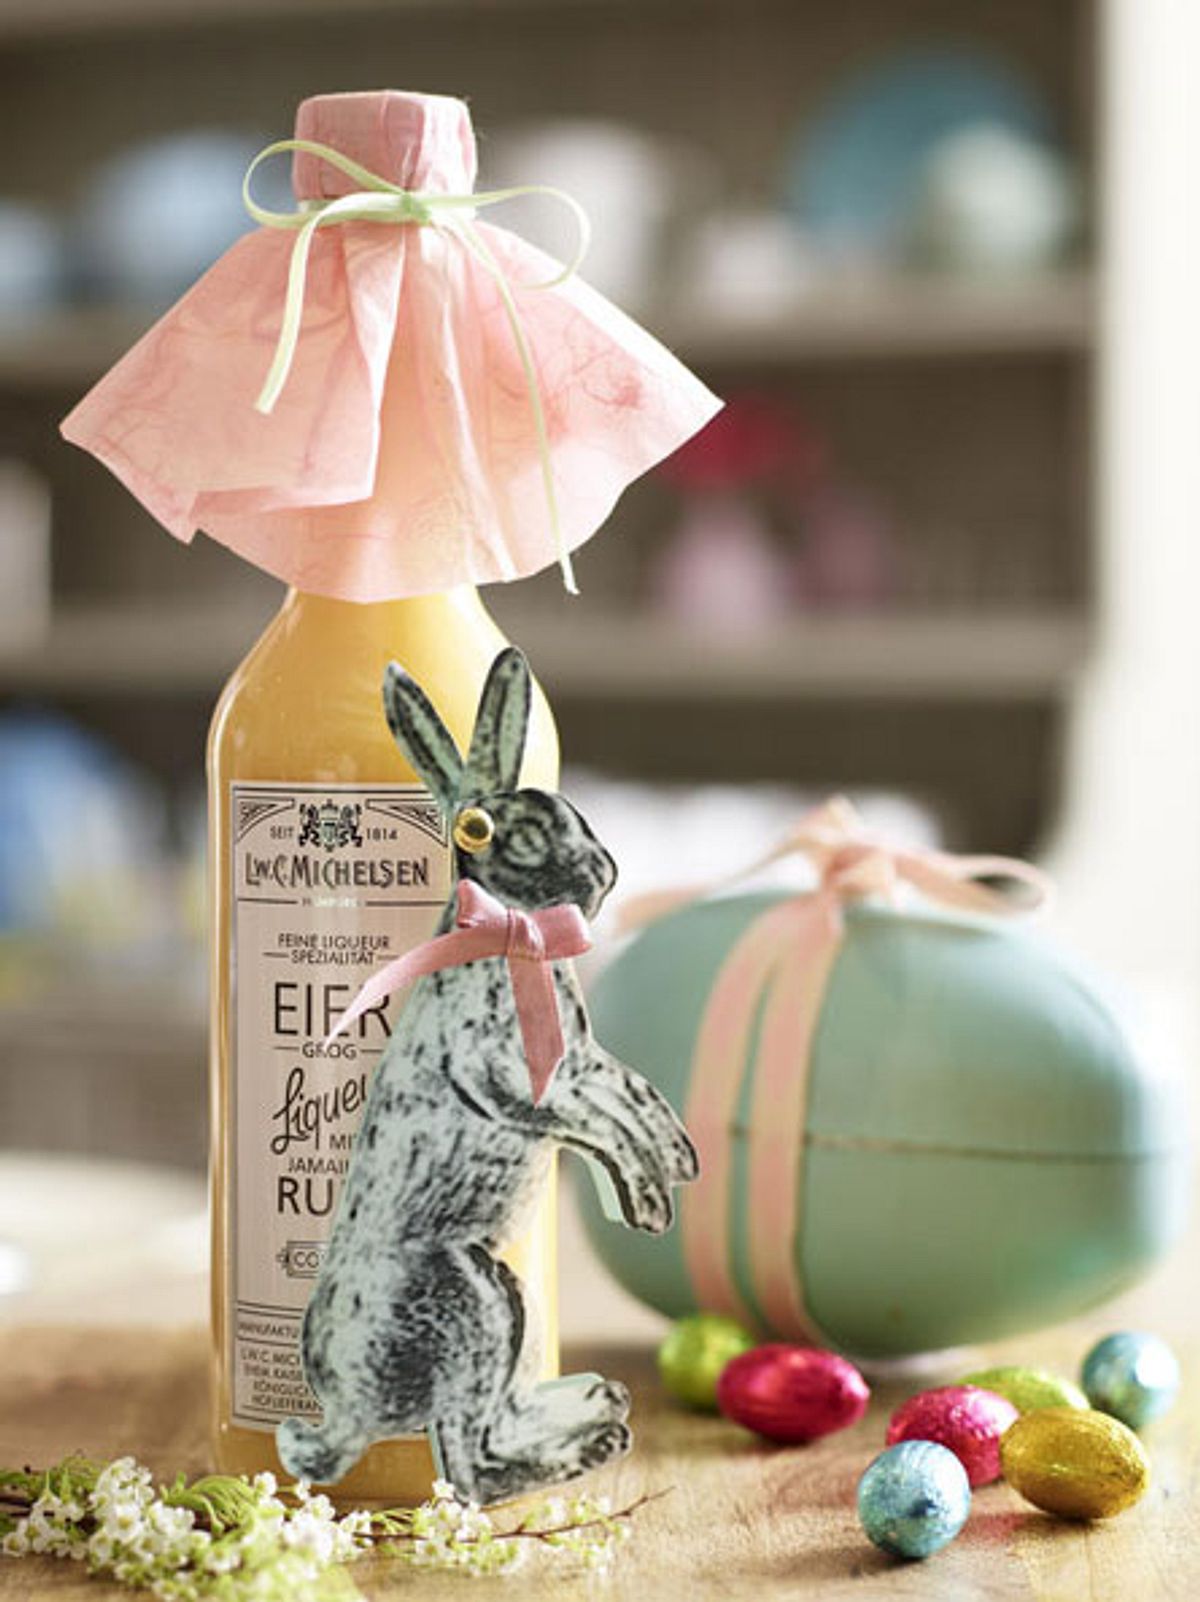 Ein Mitbringsel zu Ostern zu dekorieren ist ganz einfach und kommt sicher gut an.